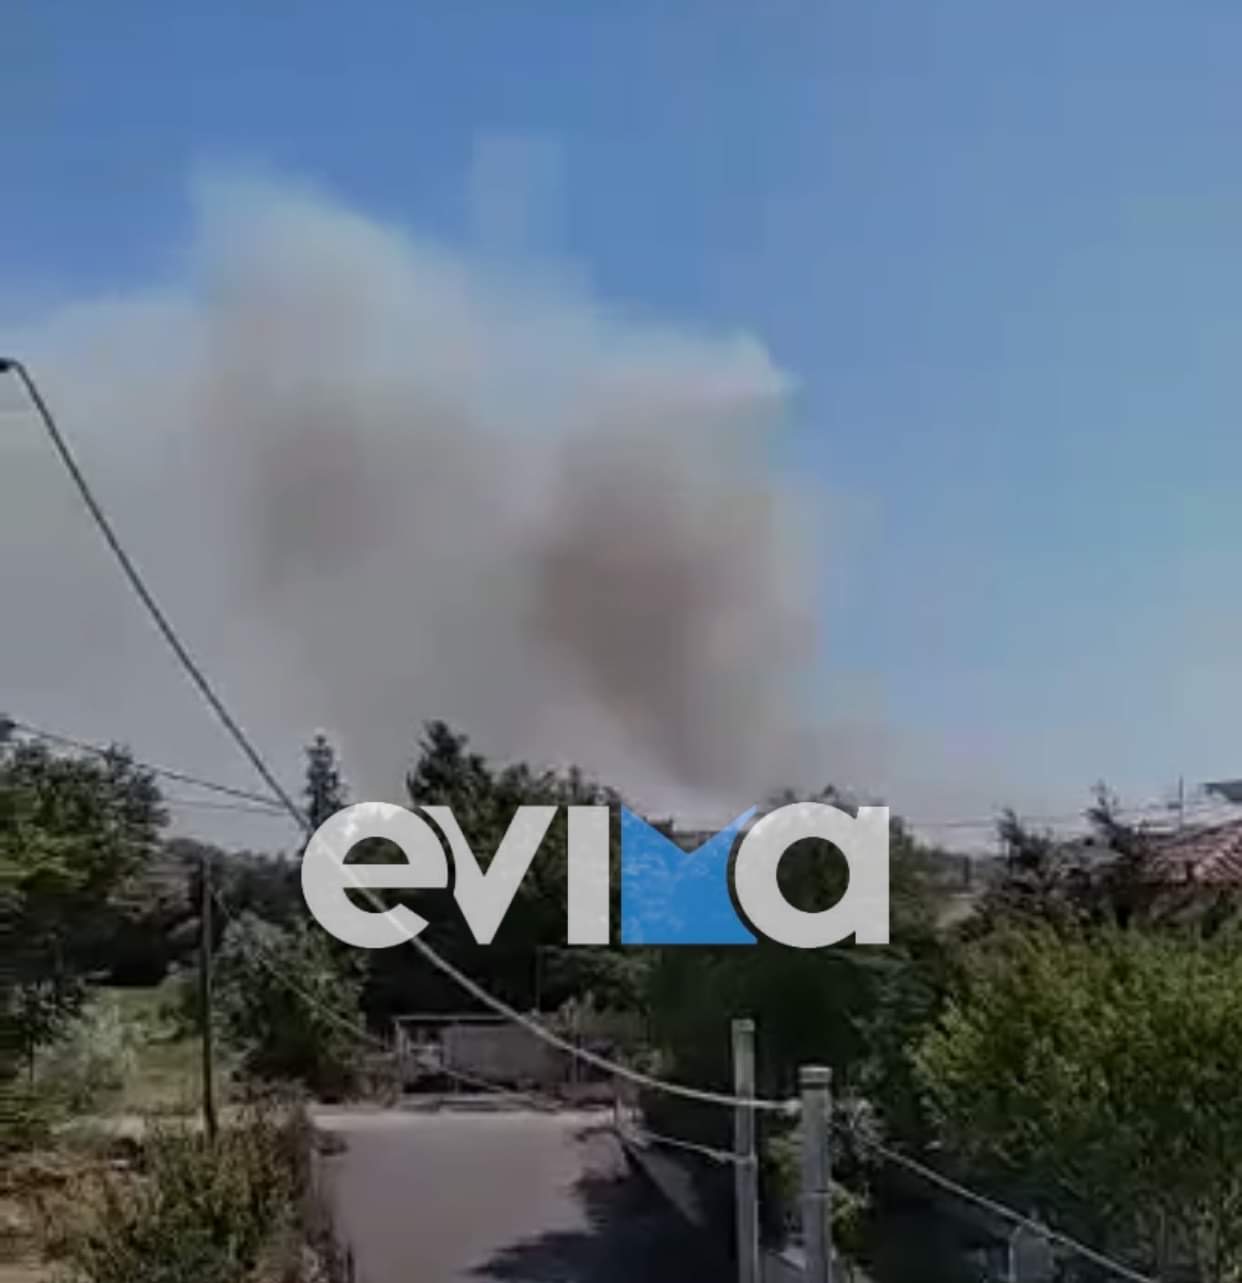 Εύβοια: Φωτιά στη Χαλκίδα κοντά σε σπίτια [εικόνες&βίντεο]